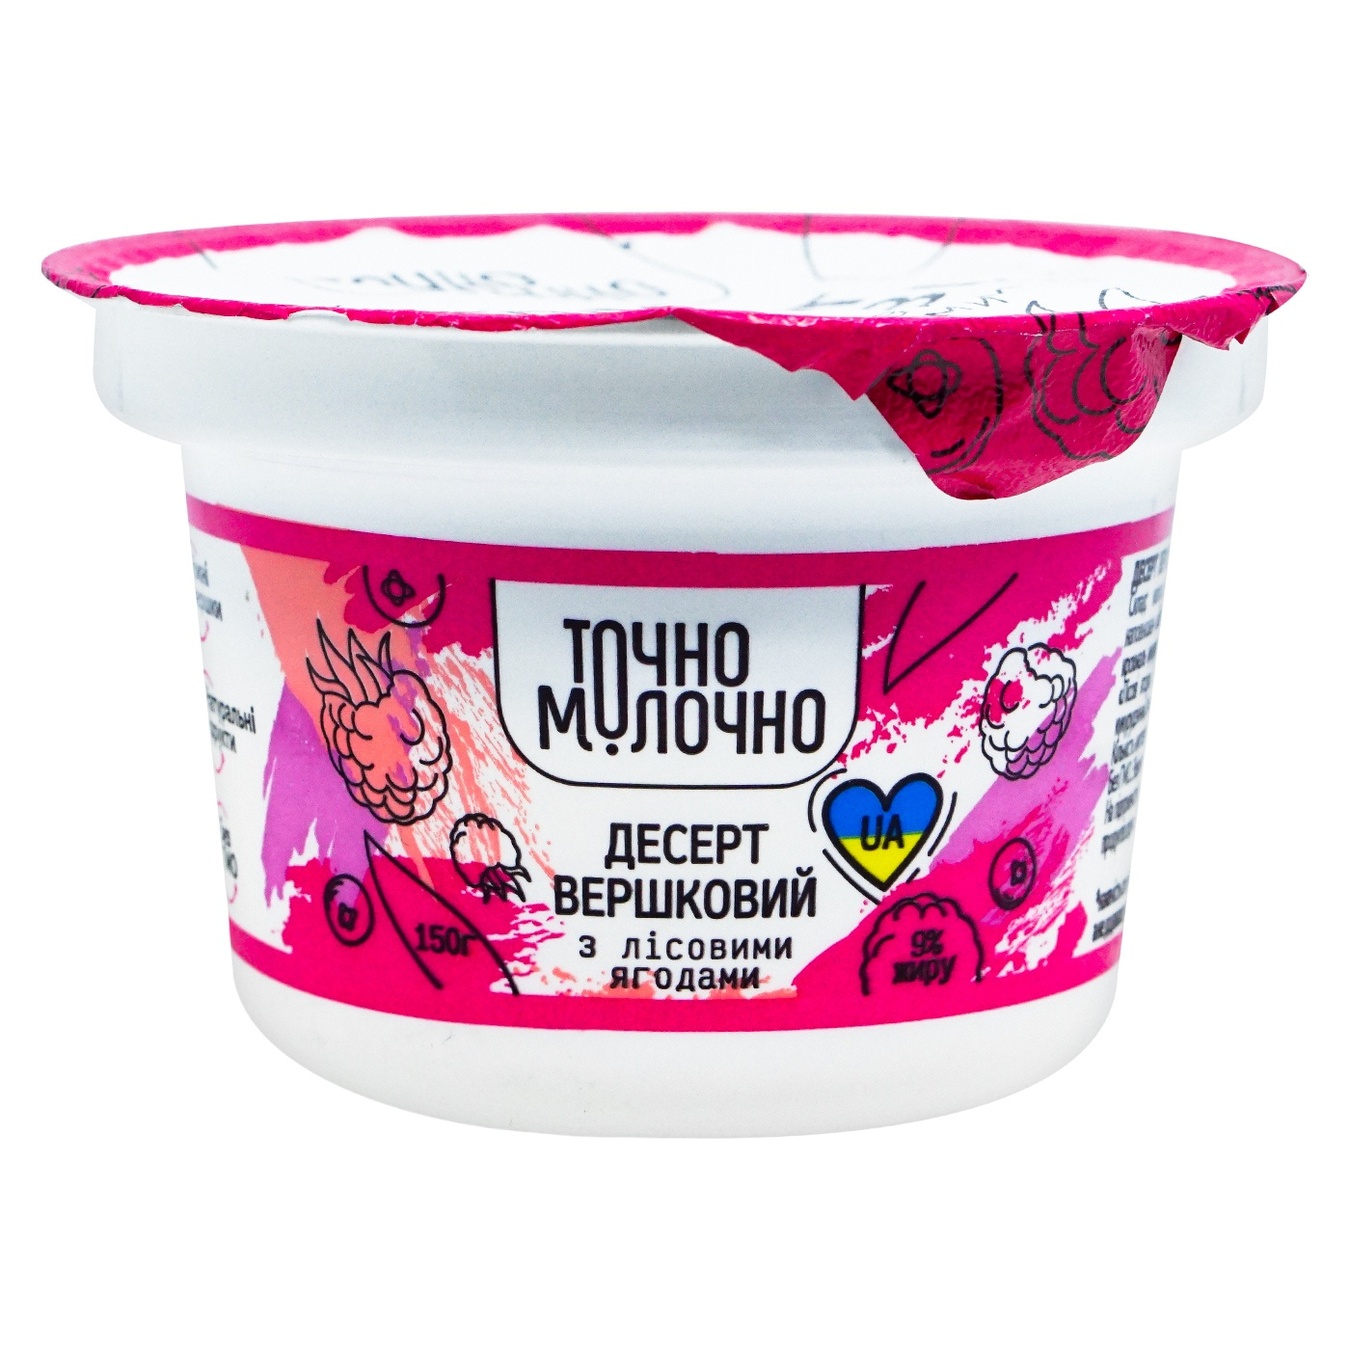 Creamy dessert Tachono Milk with filler Forest berries 9% 150g